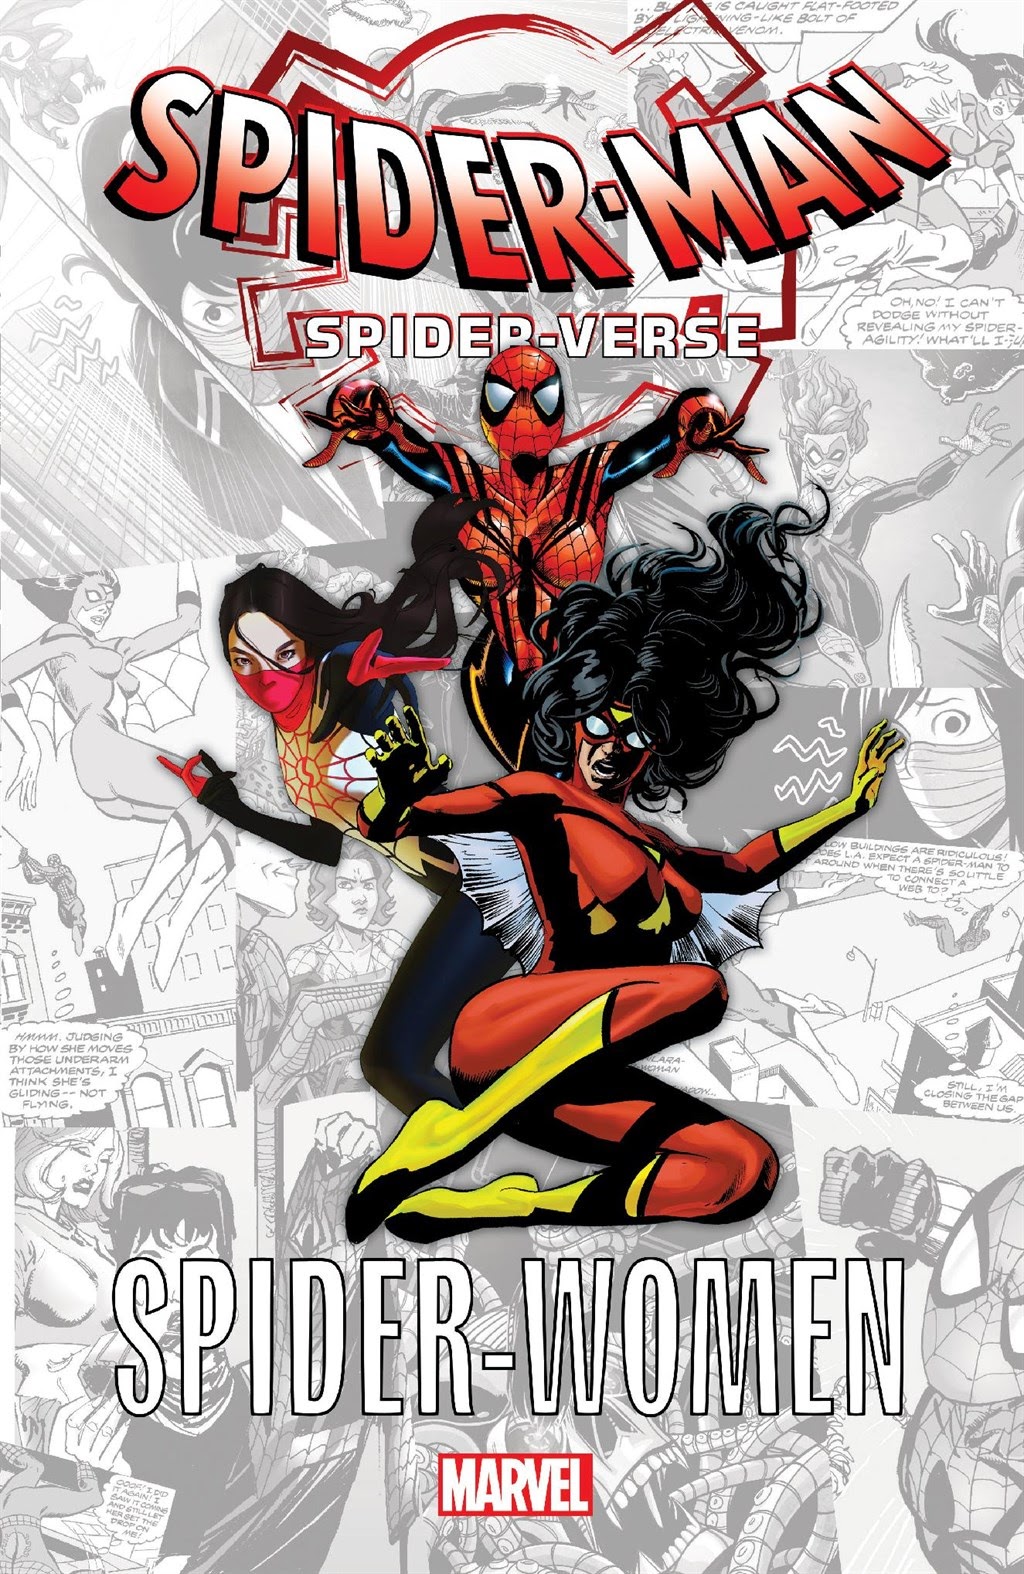 Read online Spider-Man: Spider-Verse comic -  Issue # Spider-Women - 1